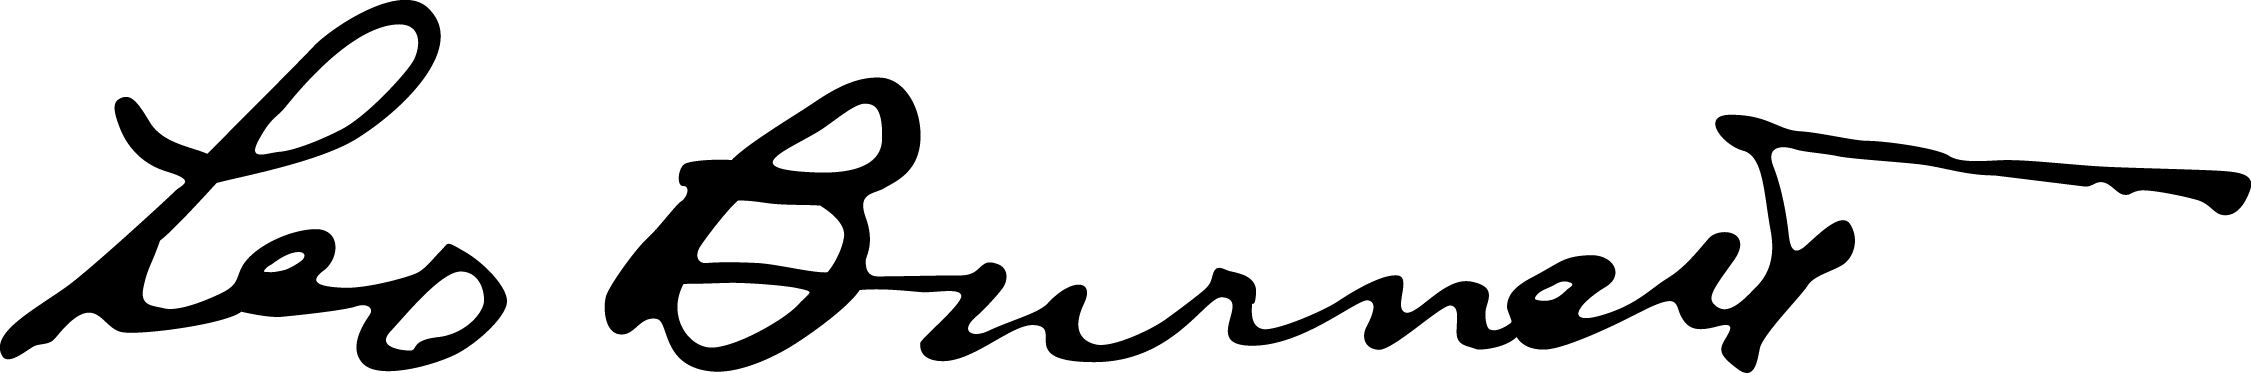 lb_signature_logo